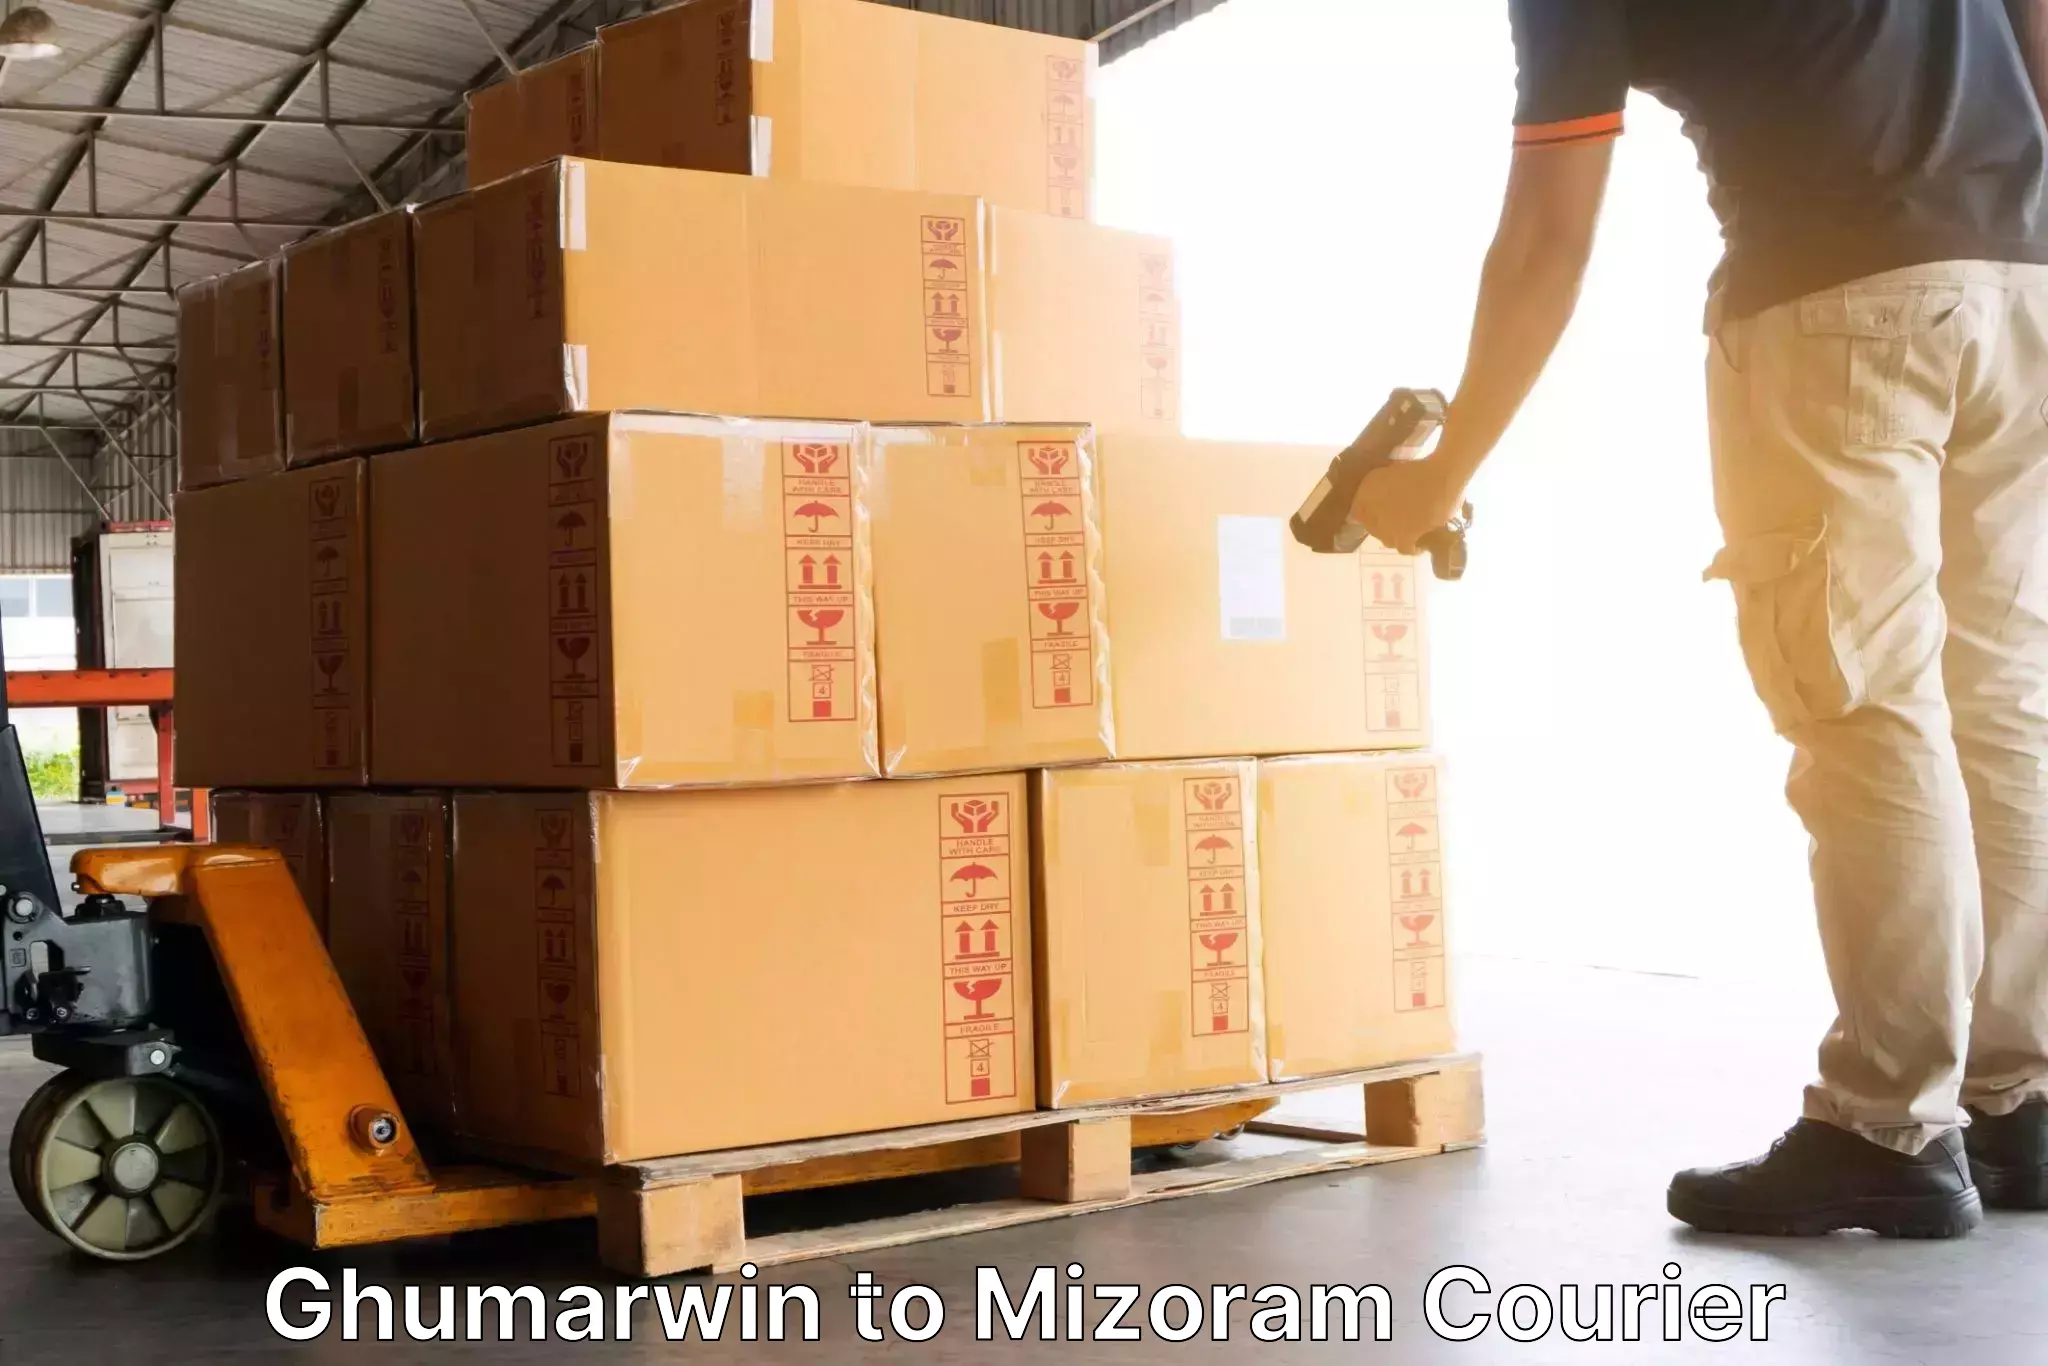 Door-to-door freight service in Ghumarwin to Darlawn